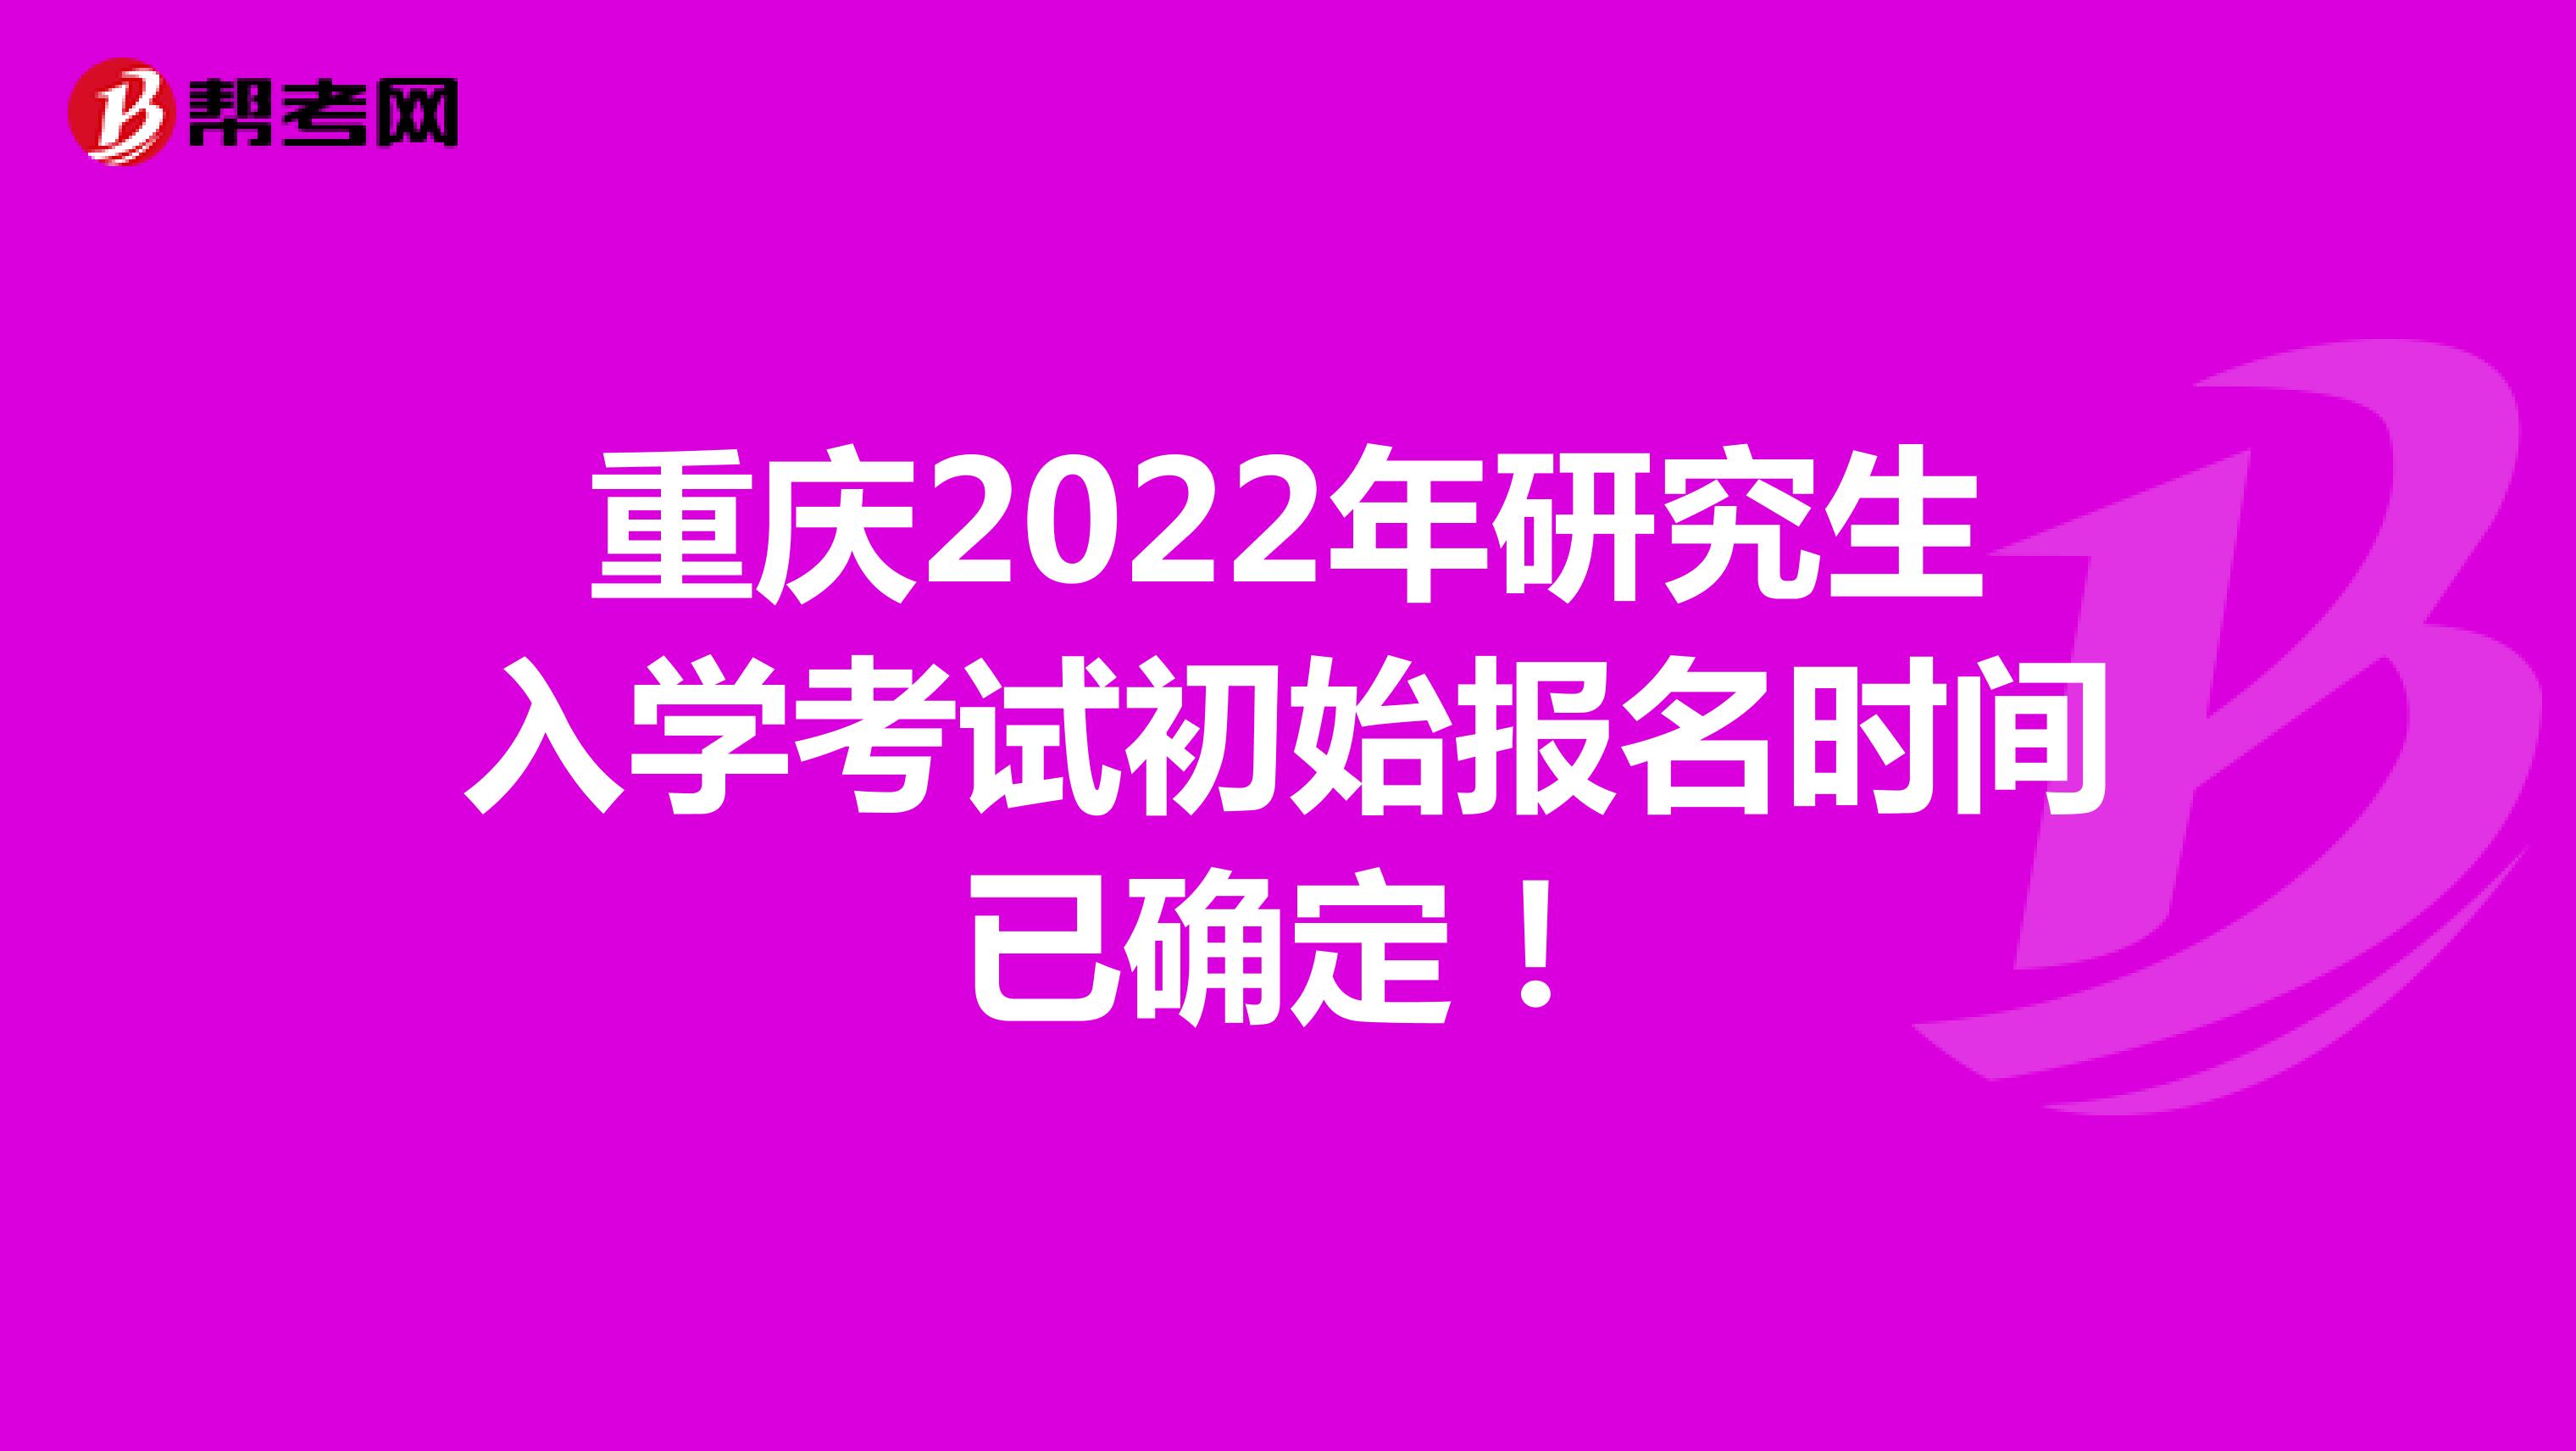 重庆2022年研究生入学考试初始报名时间已确定！